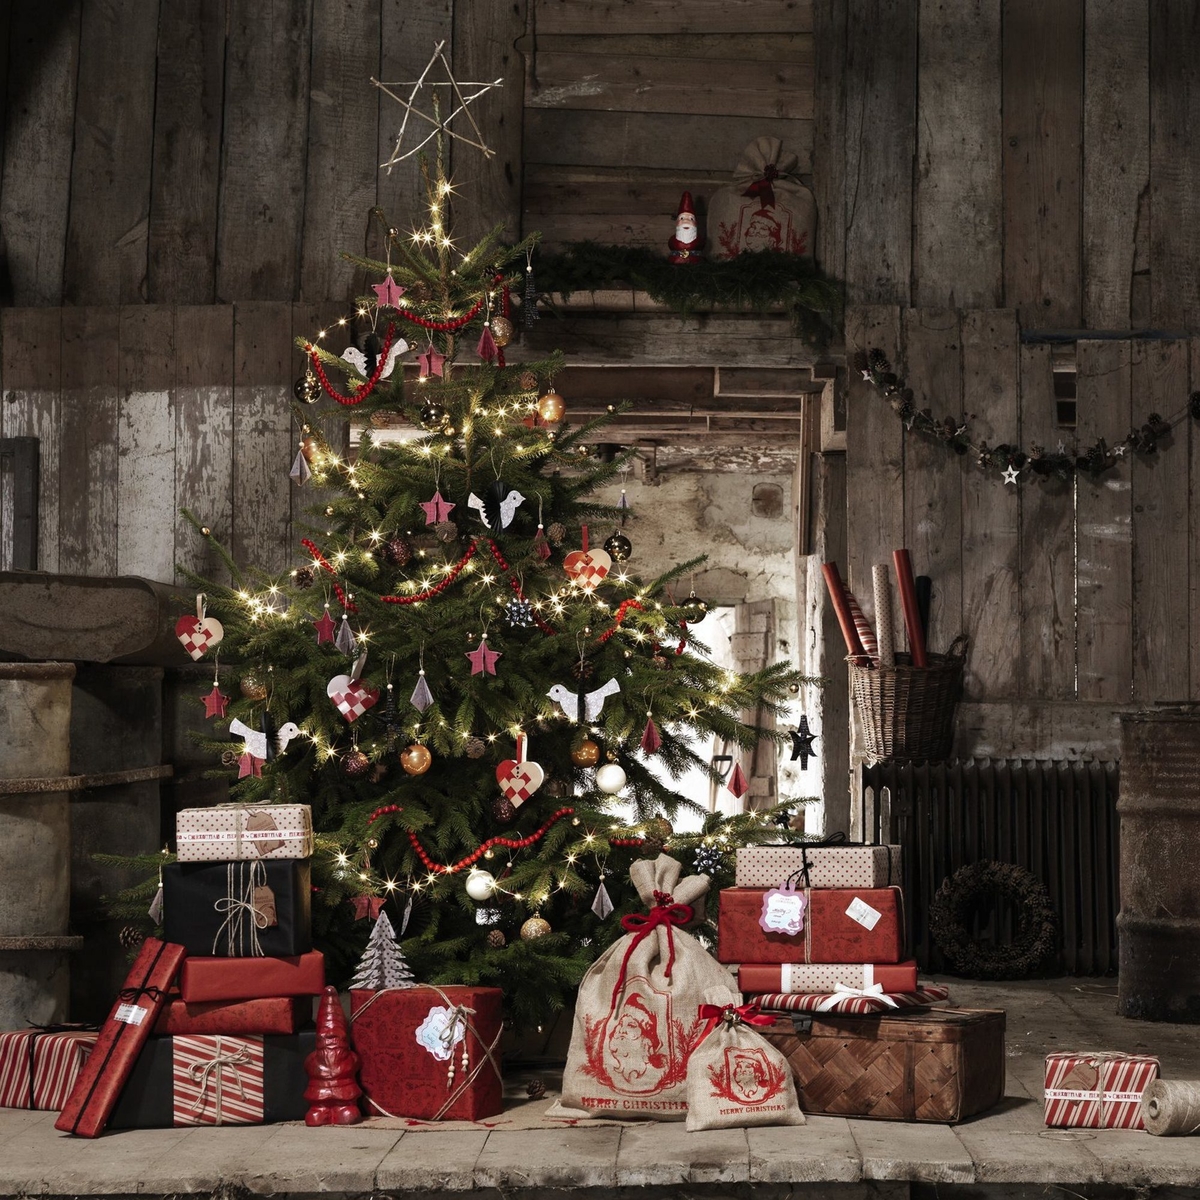 Juletræ og julegaver som i gamle dage